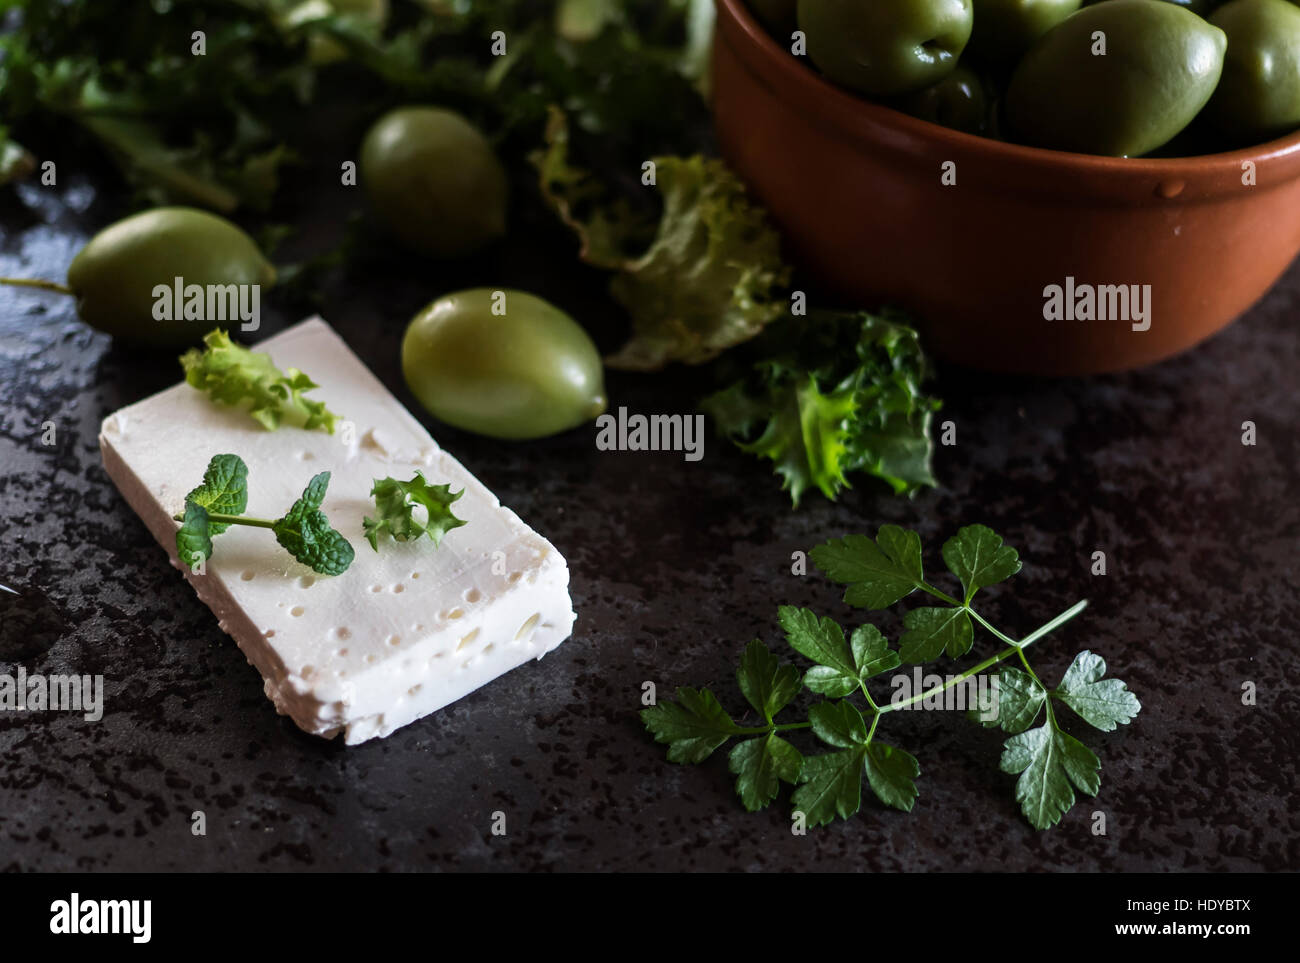 Le fromage Feta aux olives et d'herbes vertes sur fond de marbre gris. Selective focus Banque D'Images